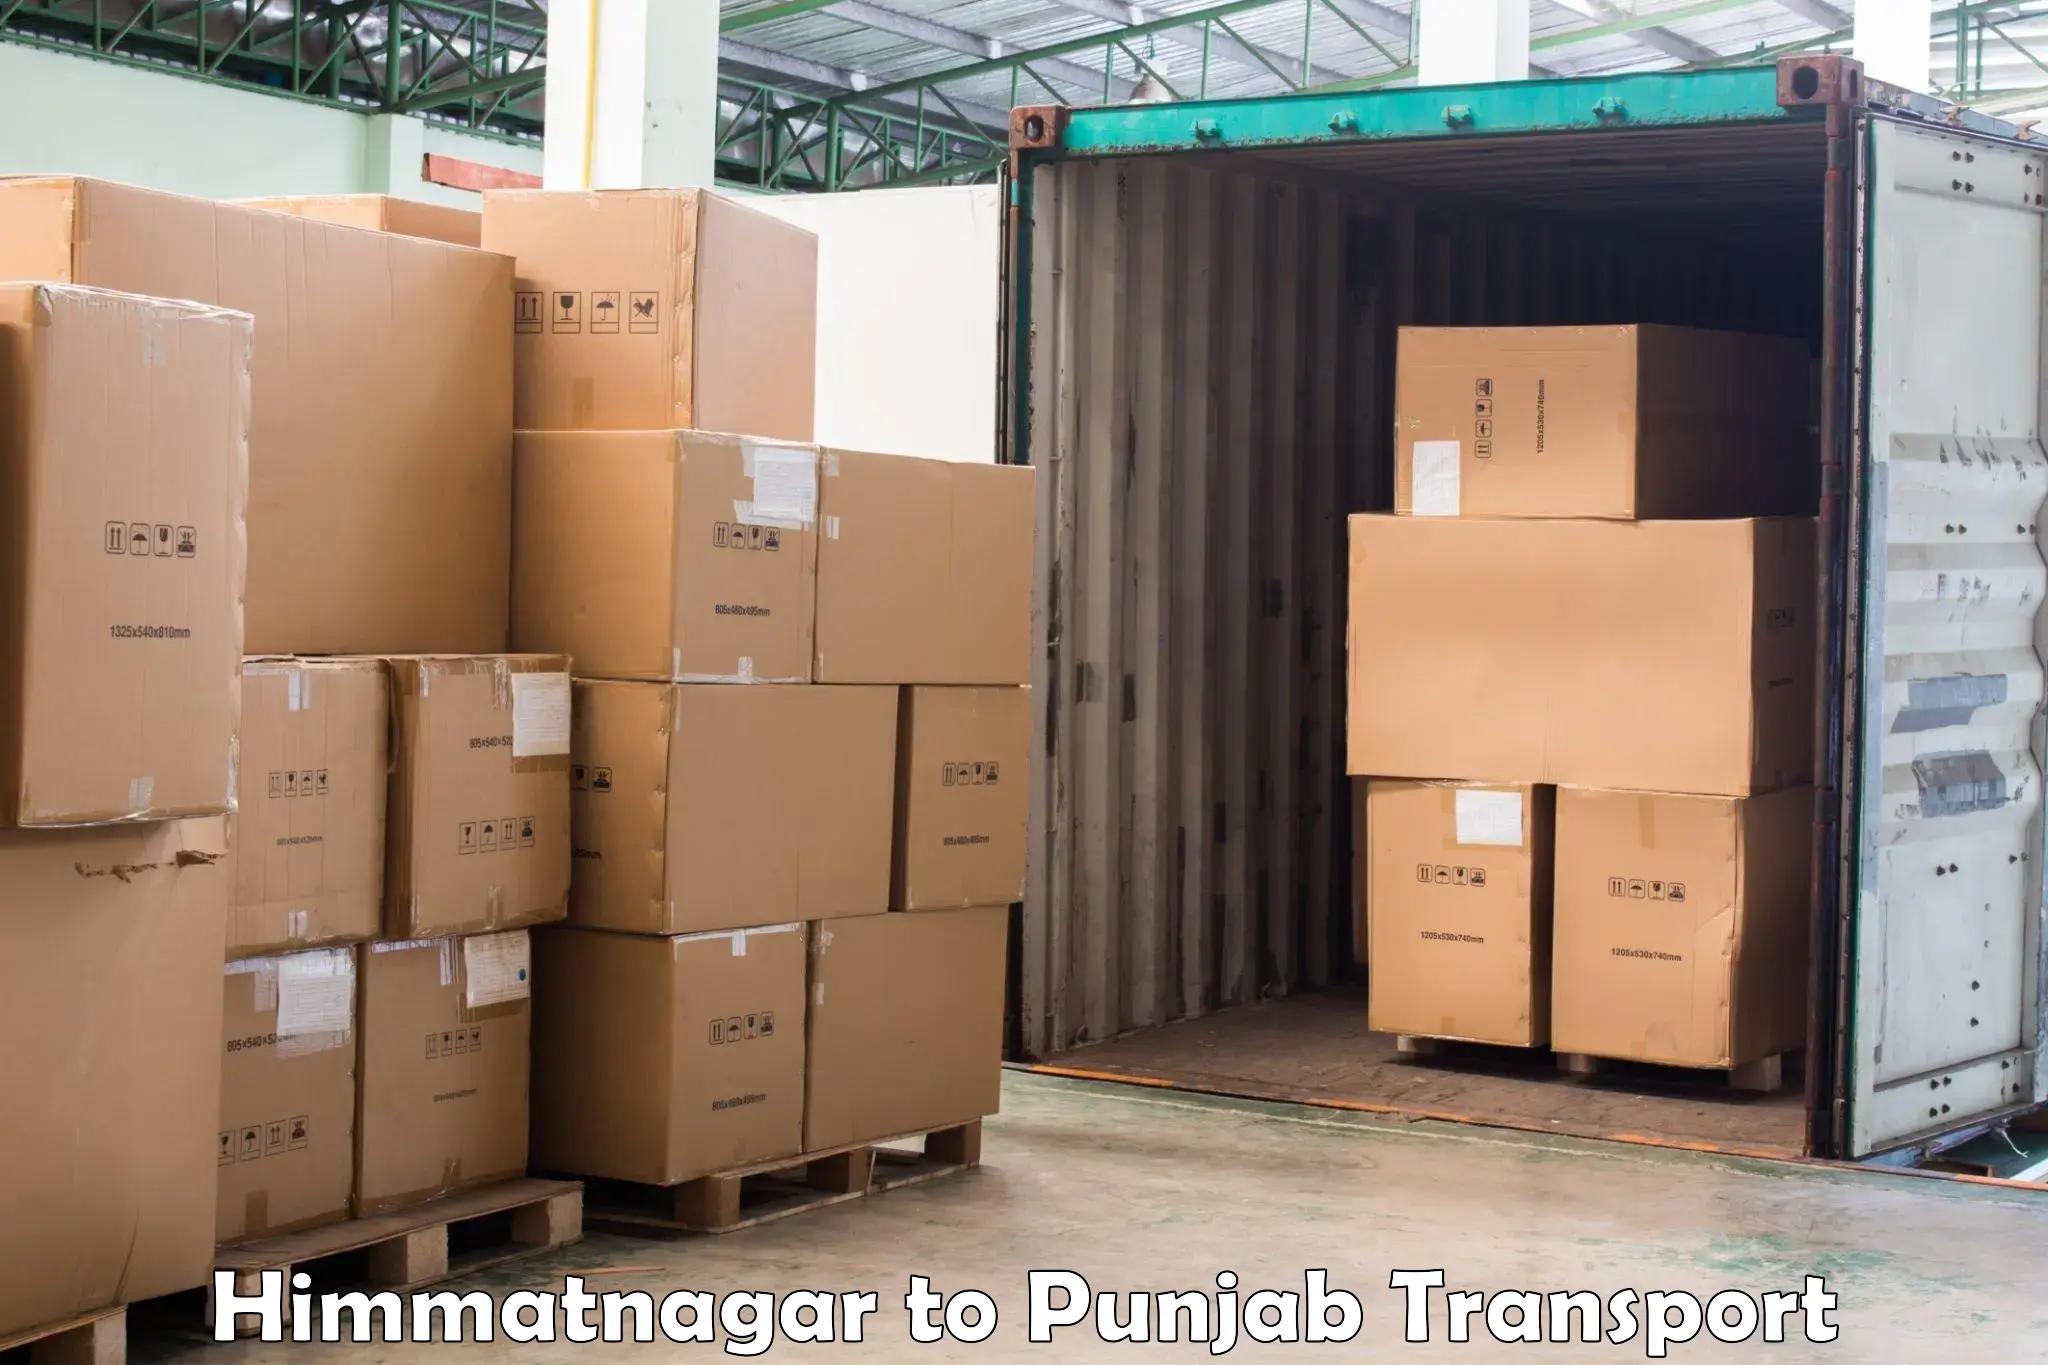 Online transport service Himmatnagar to Amritsar